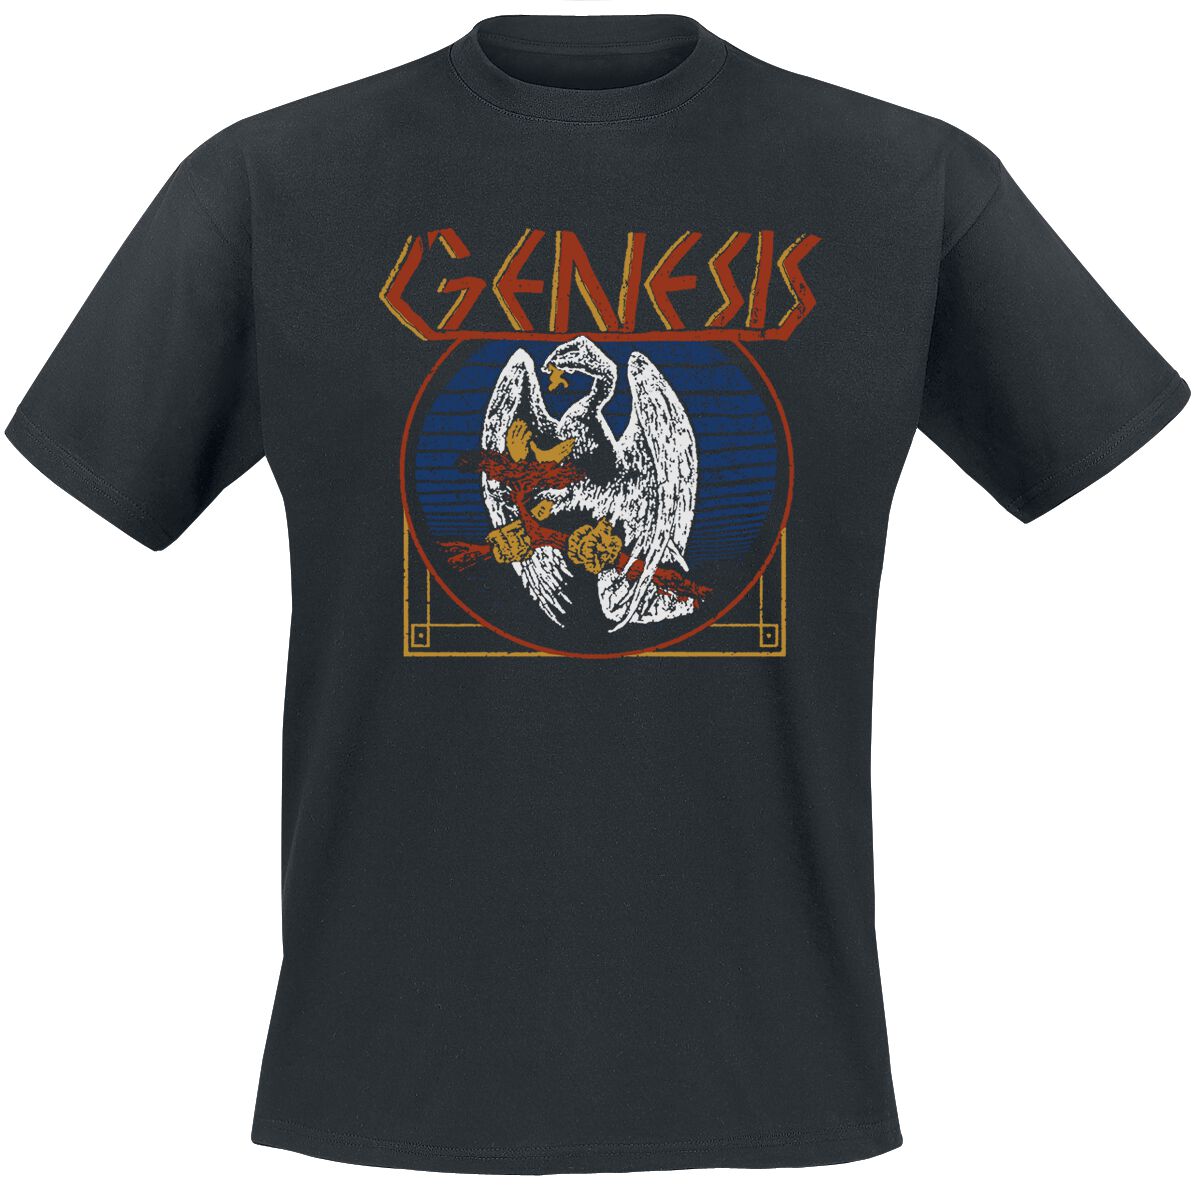 genesis t-shirt - vulture - s bis xxl - fÃ¼r mÃ¤nner - grÃ¶ÃŸe xxl - - emp exklusives merchandise! schwarz